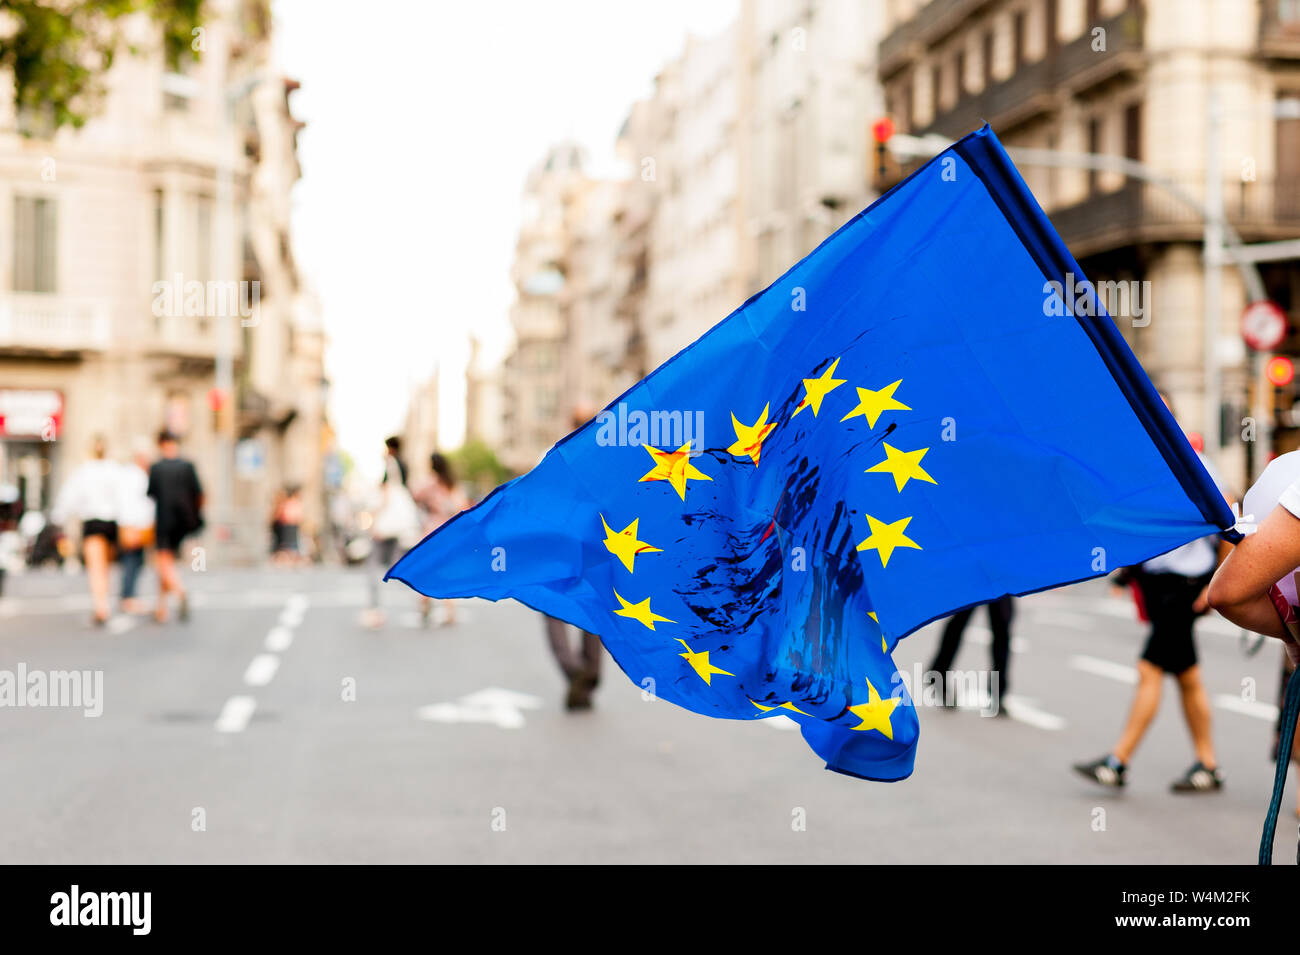 Jeune personne marche dans les rues en plein jour holding drapeau de l'Union européenne avec des taches de sang sur elle pour protester contre les politiques d'immigration Banque D'Images